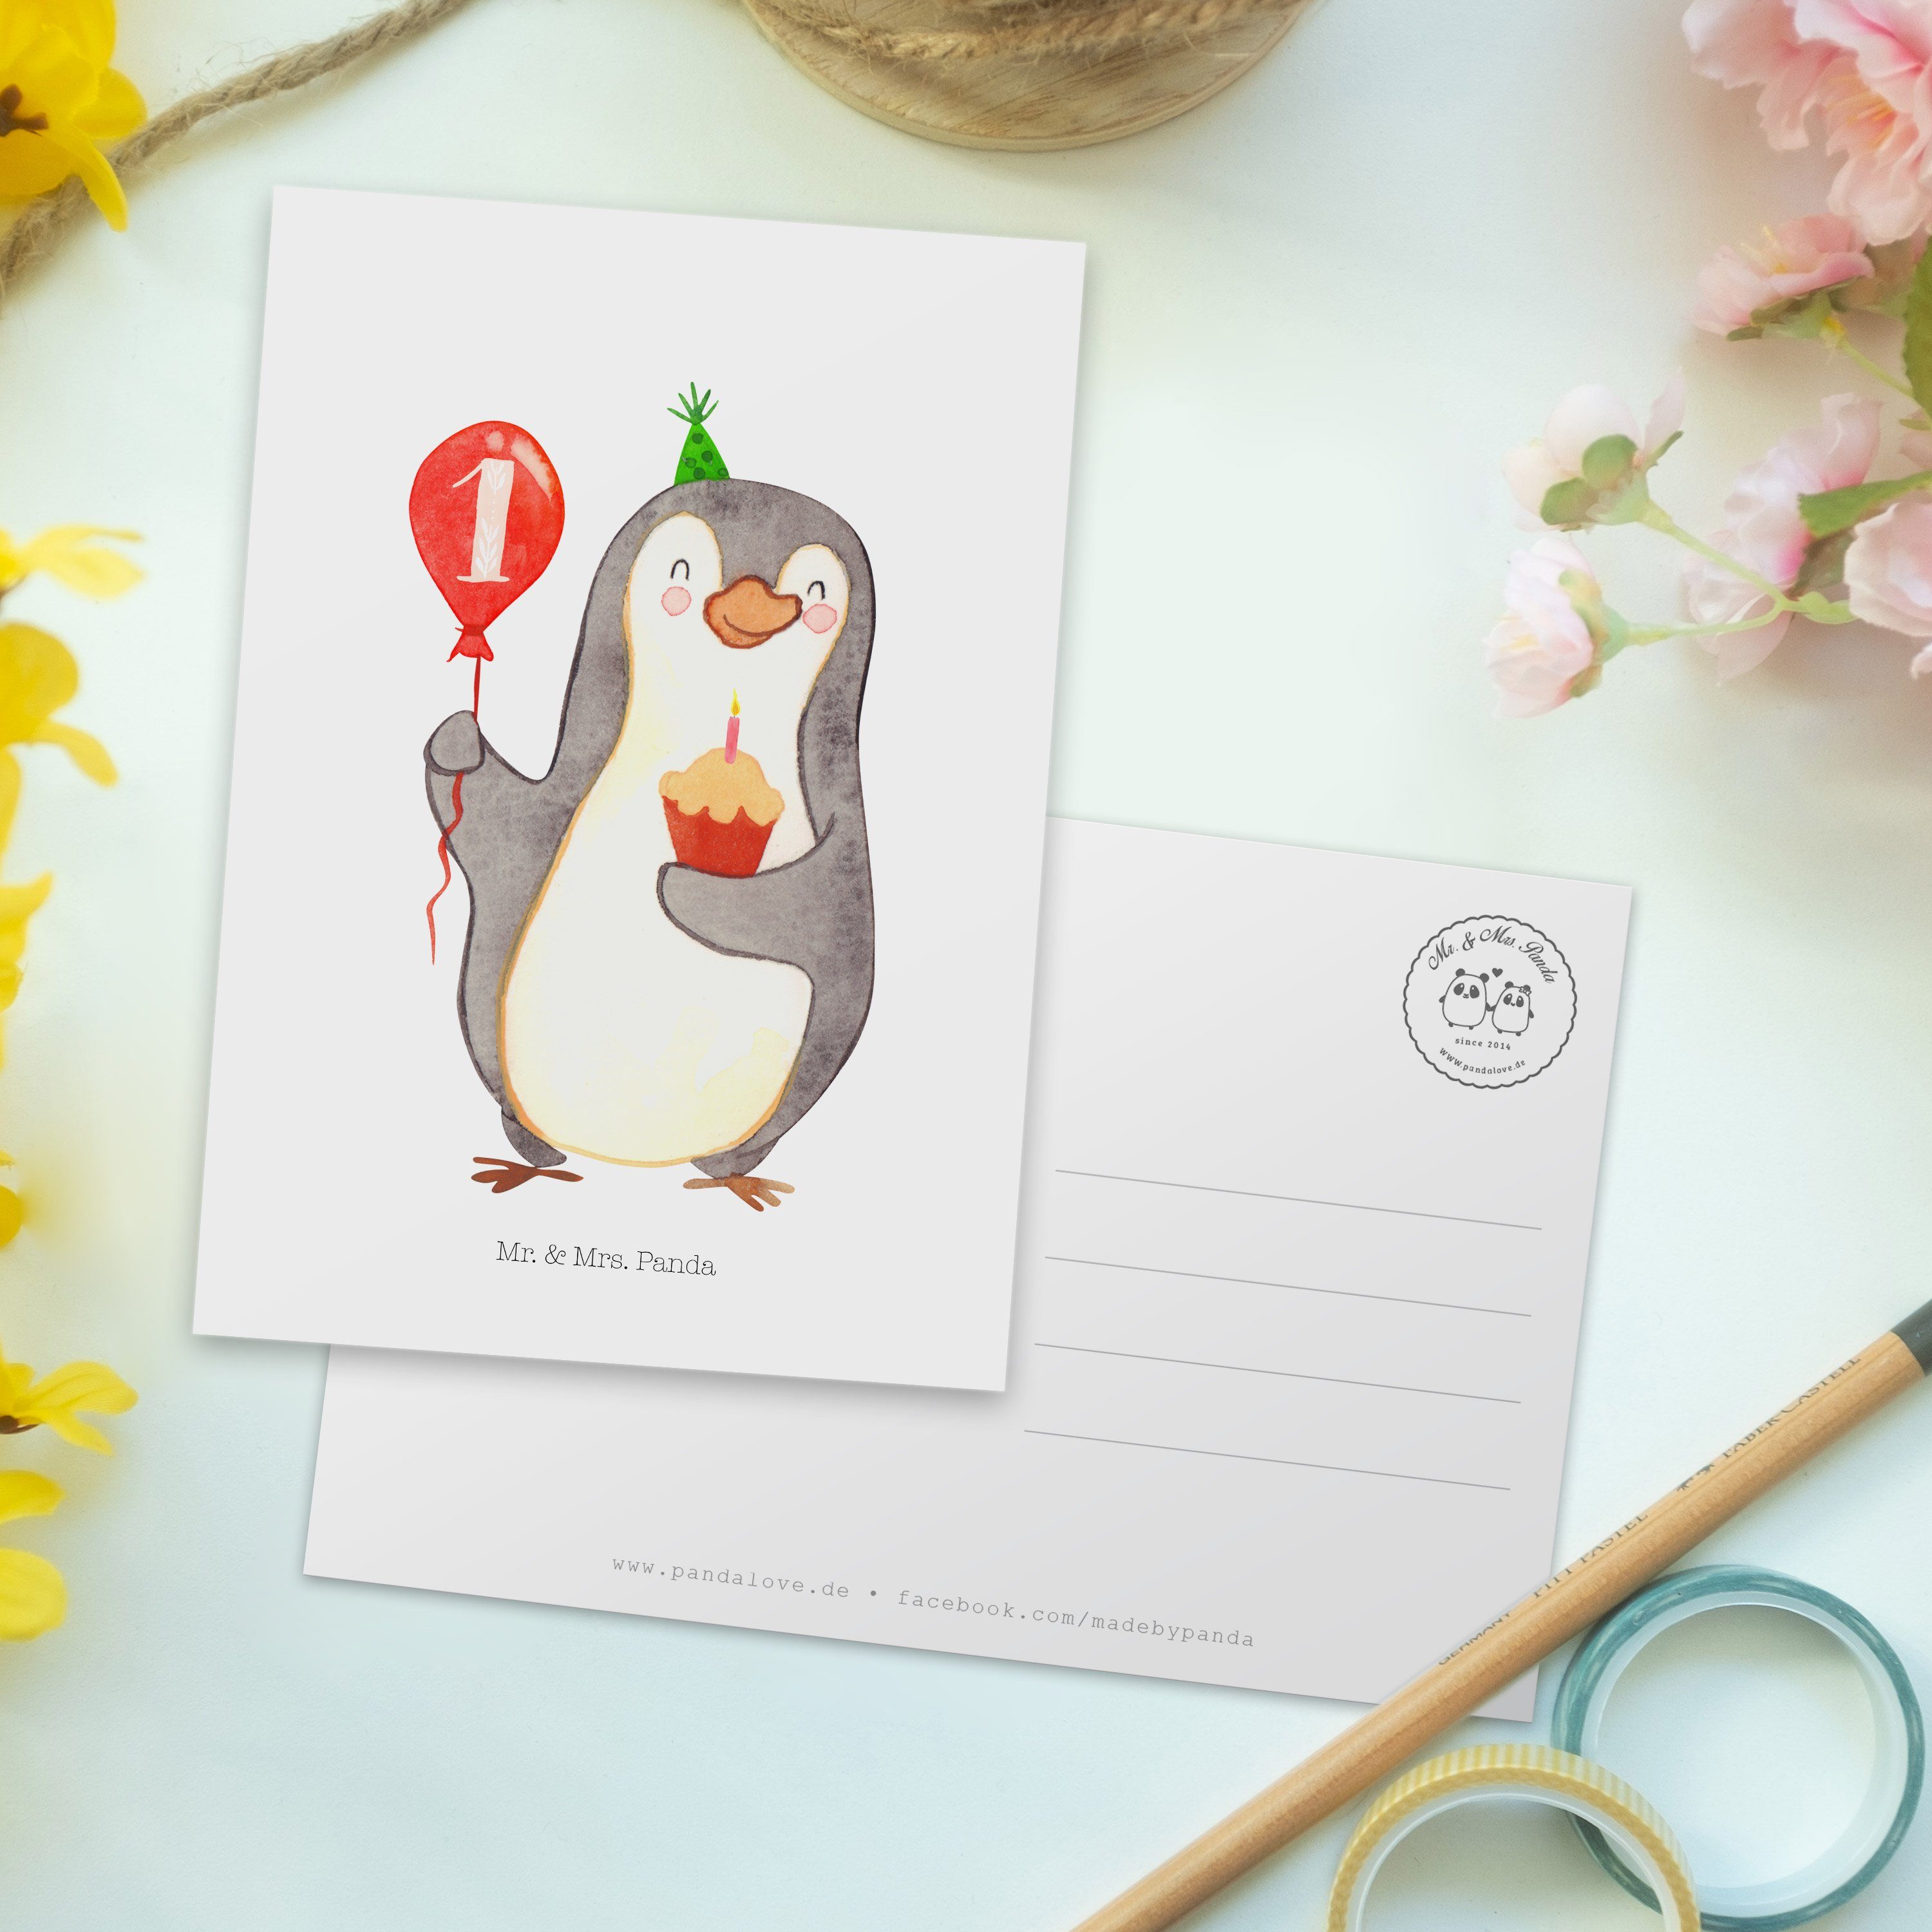 Mr. & Mrs. Panda Postkarte Luftballon Pinguin - 1. Weiß Geburtstag Geburtstagsgesche Geschenk, 